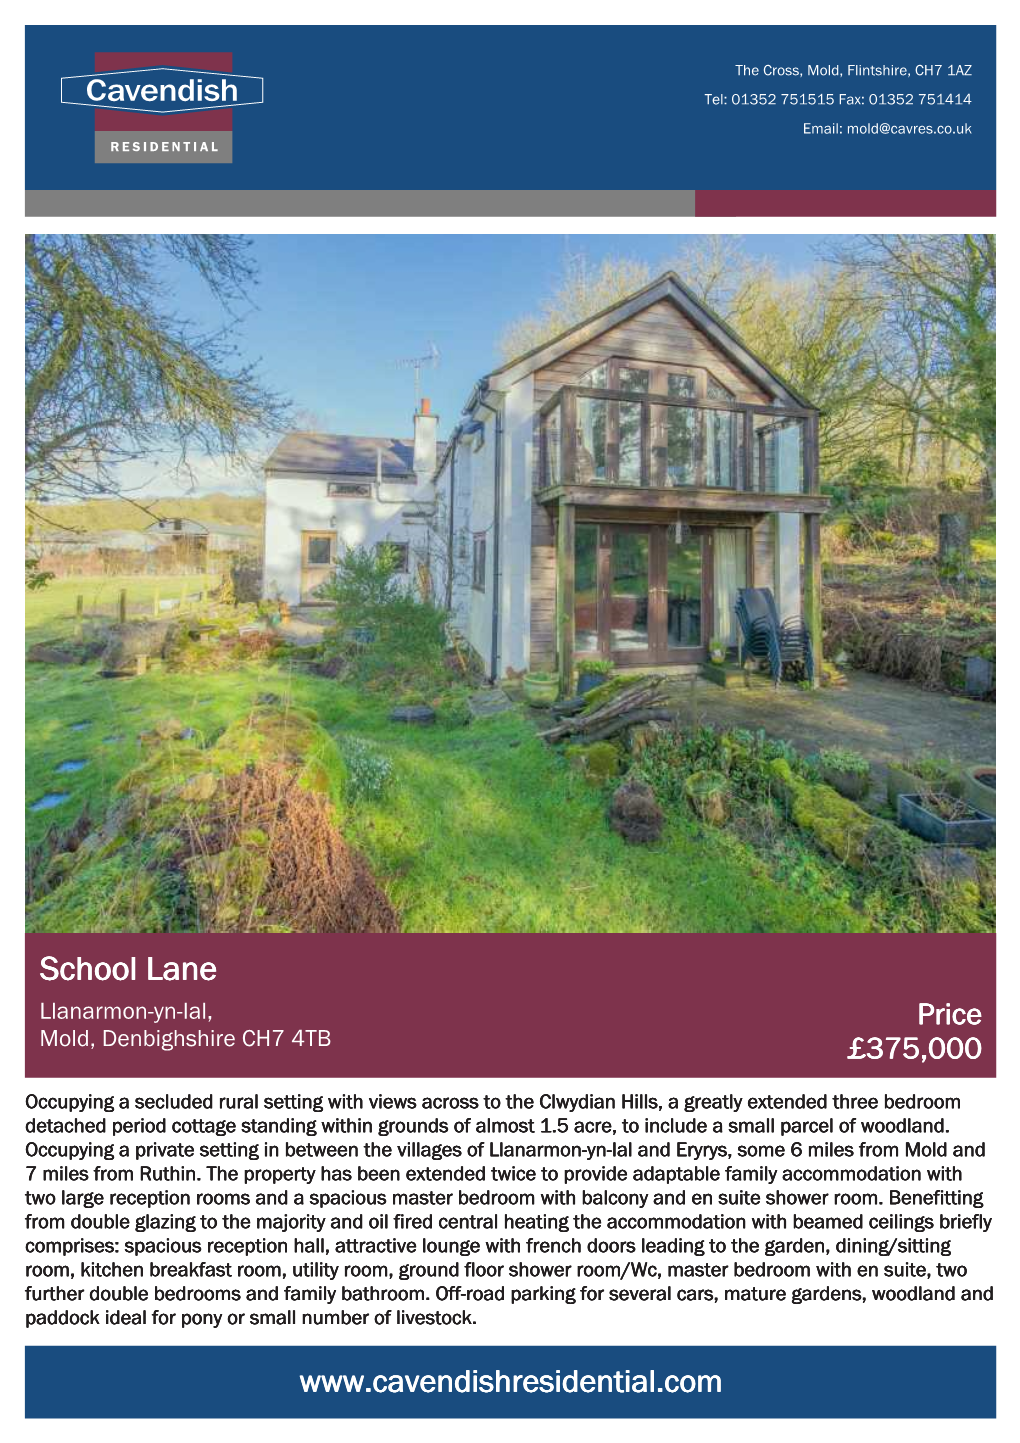 School Lane Llanarmon-Yn-Ial, Price Mold, Denbighshire CH7 4TB £375,000